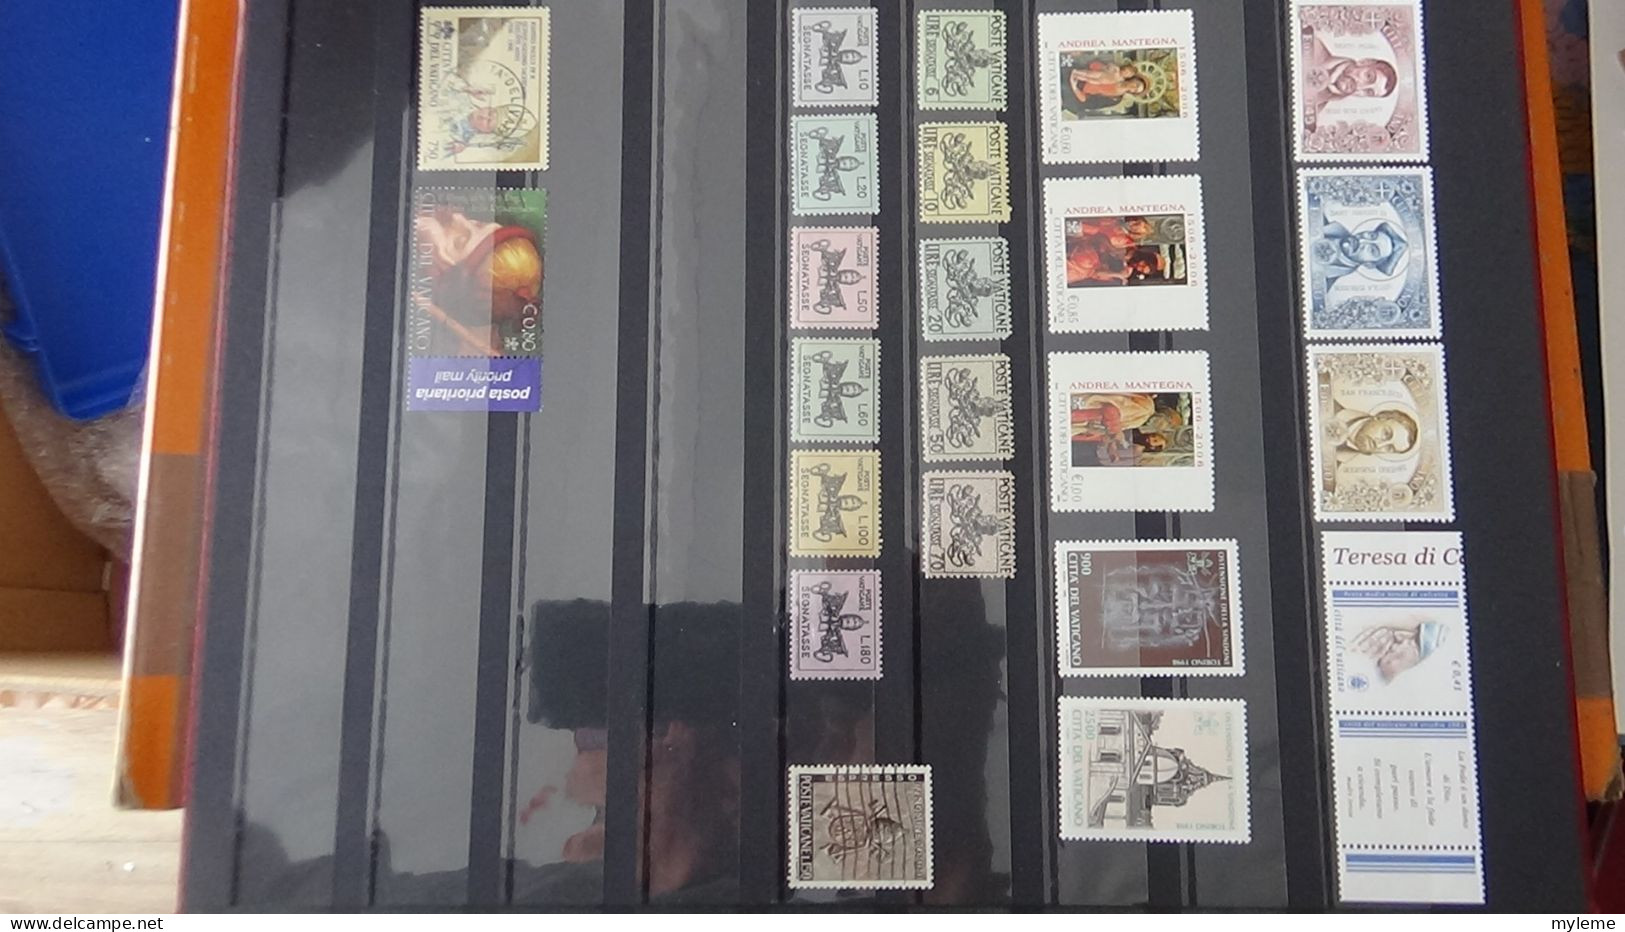 BF16 Ensemble de timbres et blocs du Vatican  A saisir !!!.